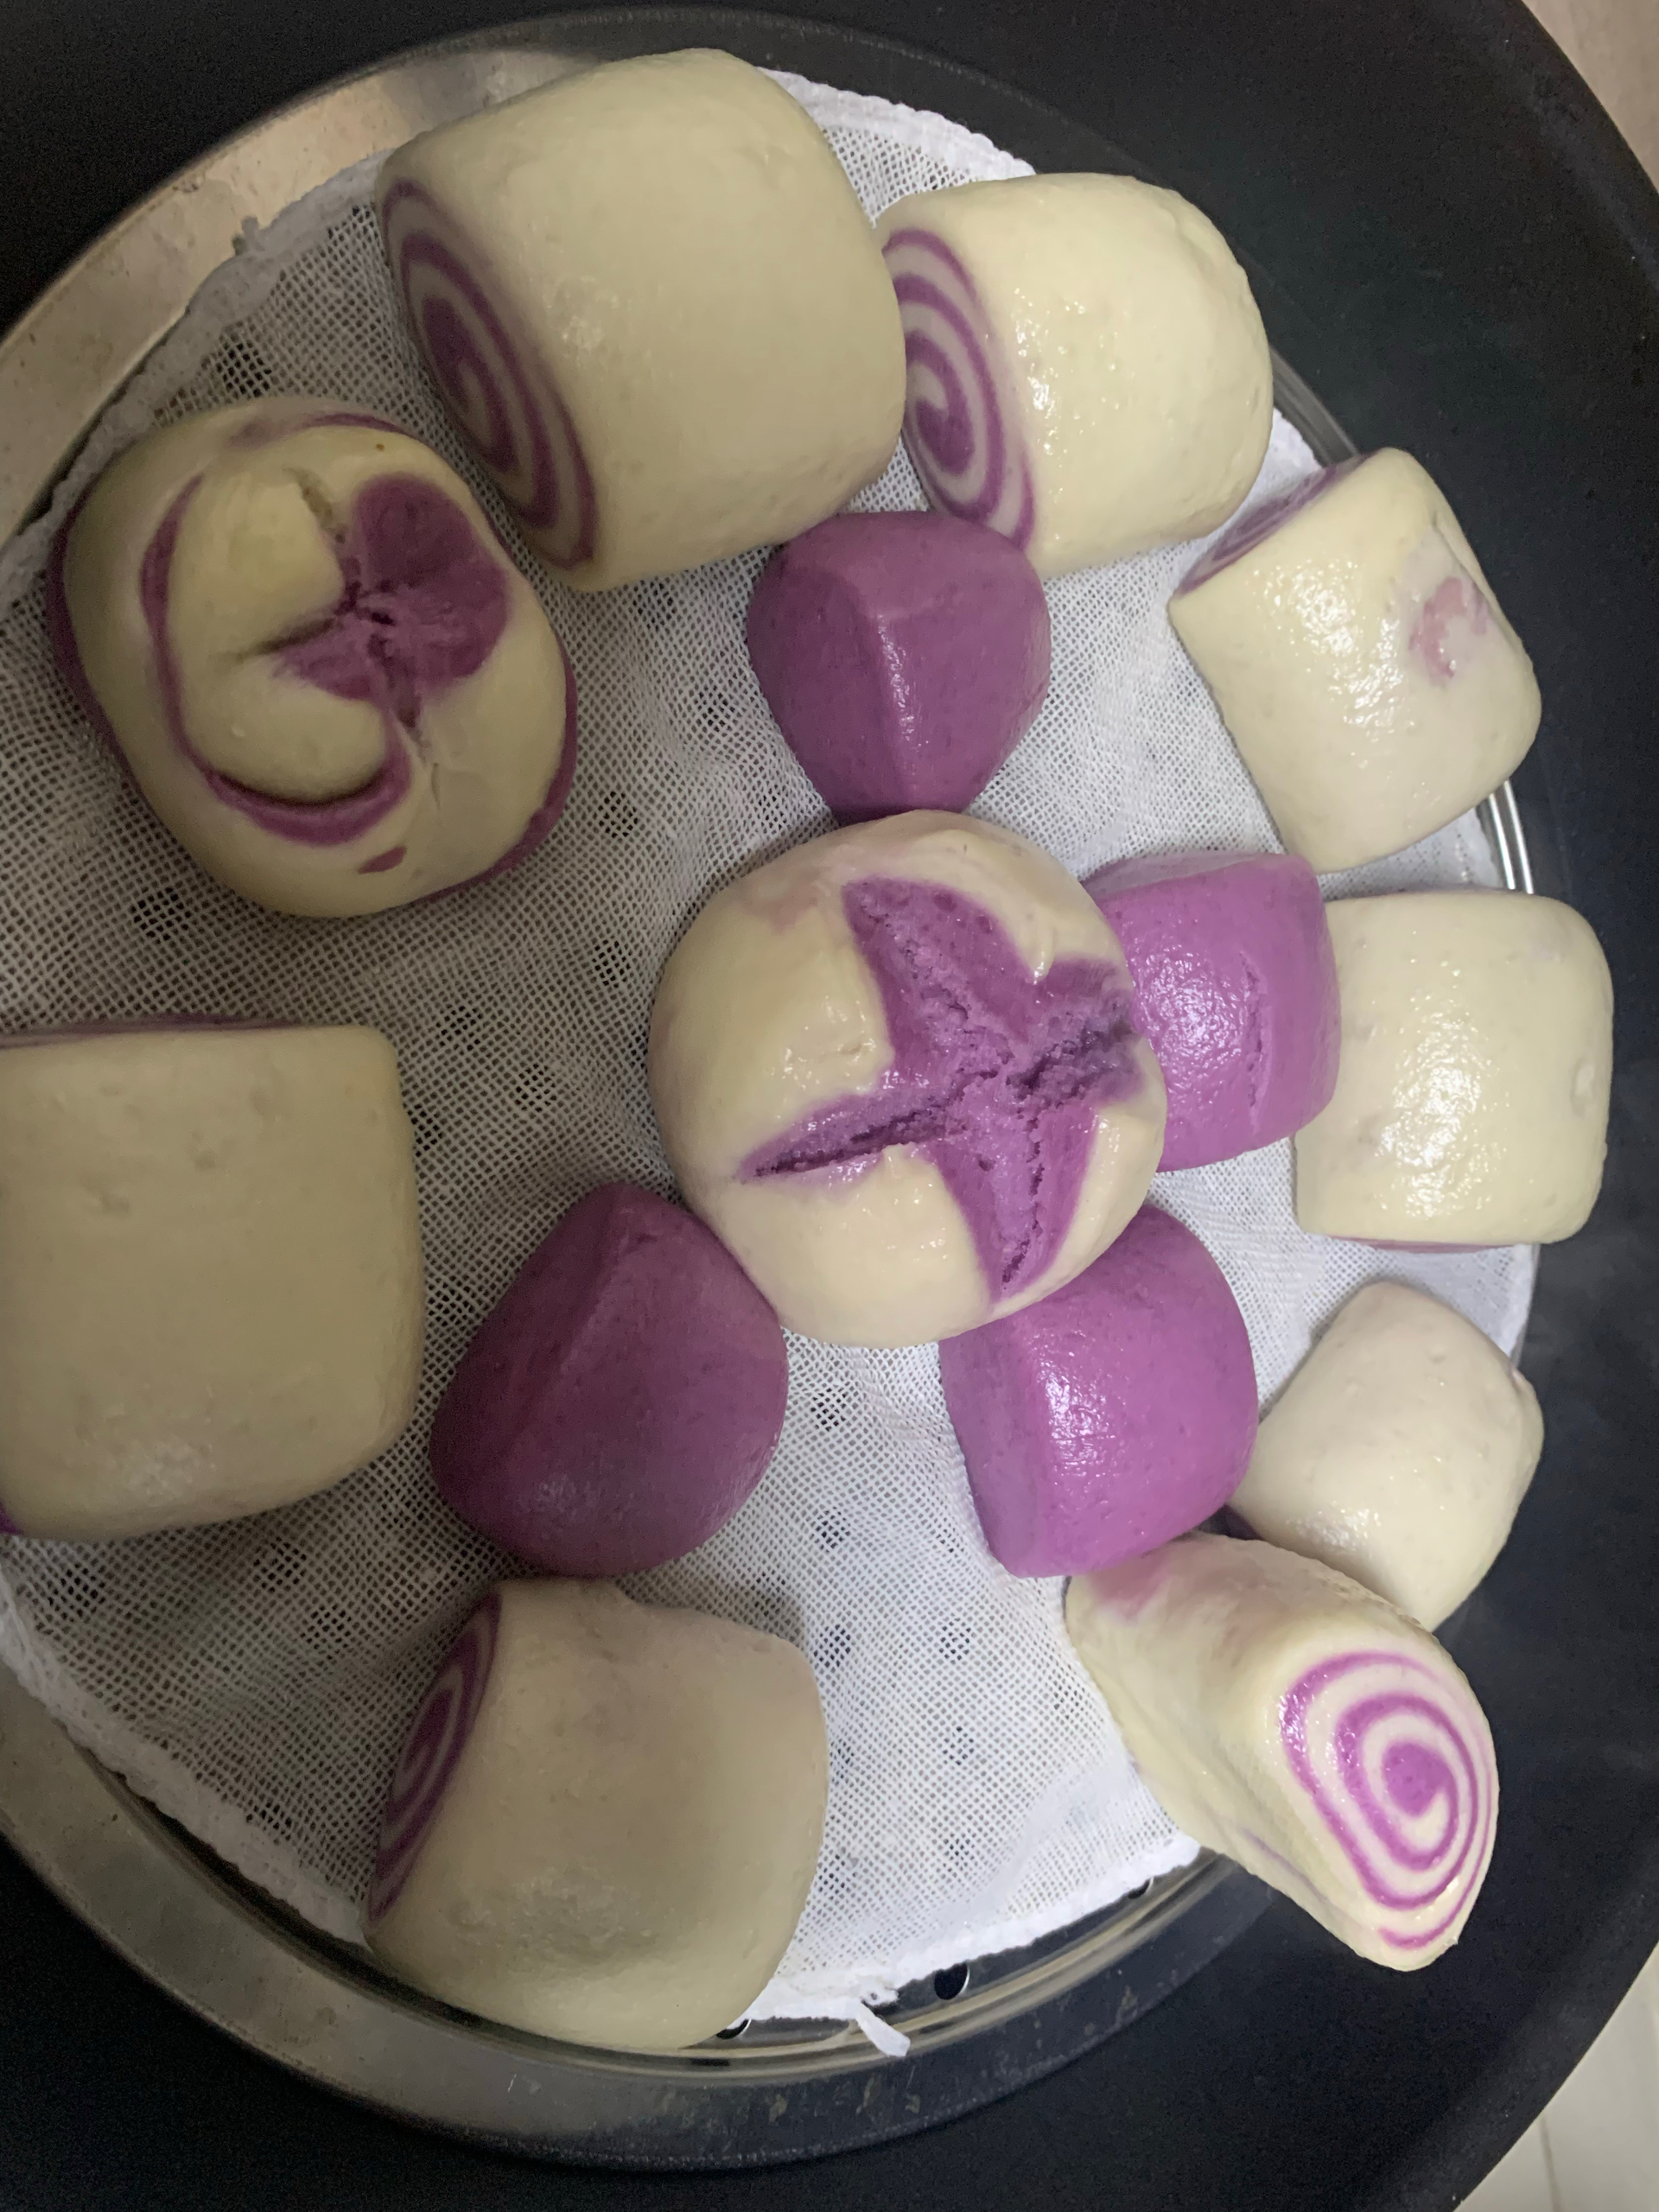 紫薯馒头卷（紫薯双色馒头）